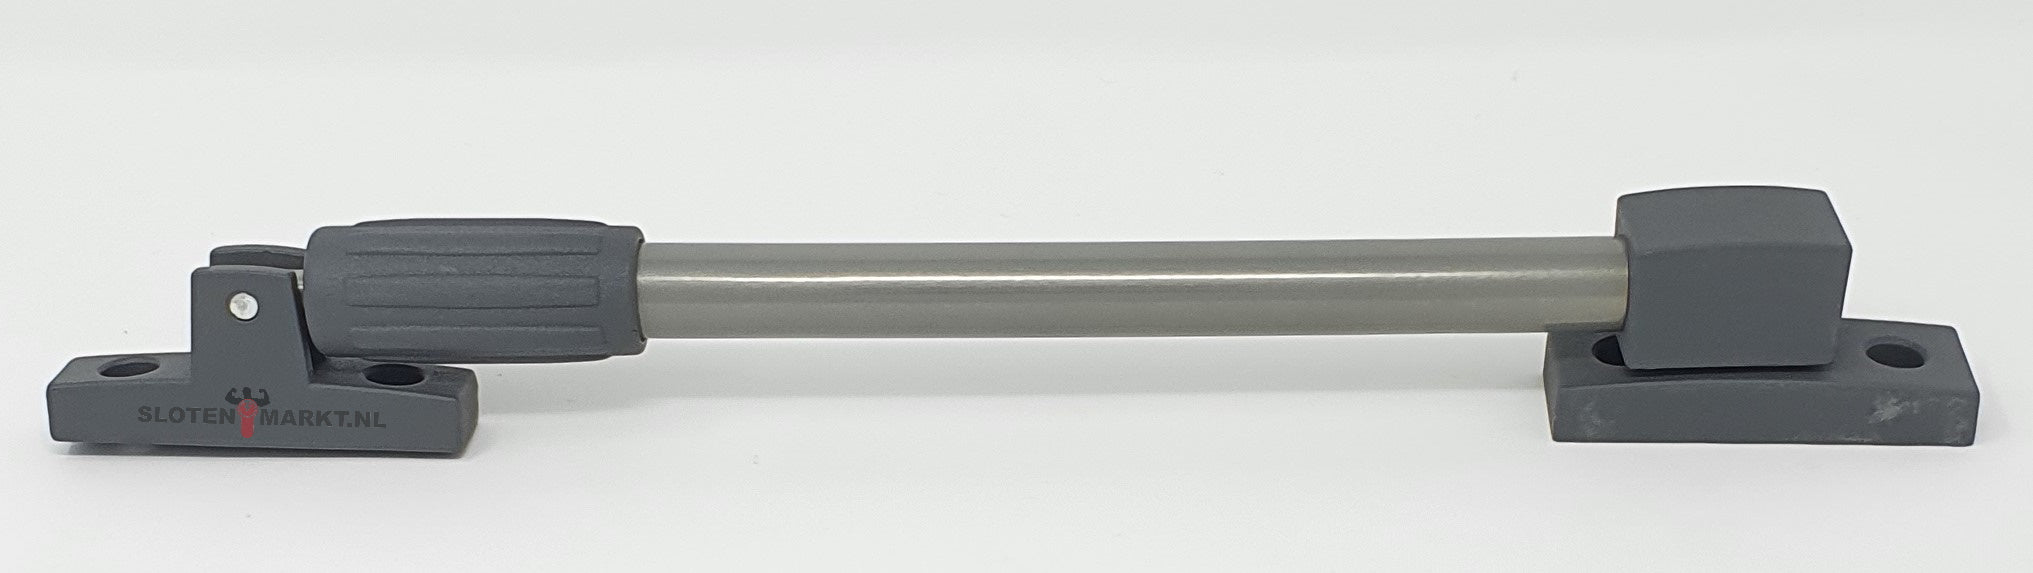 Raamuitzetter telescopisch grijs/hamerslag donkergrijs 30 cm